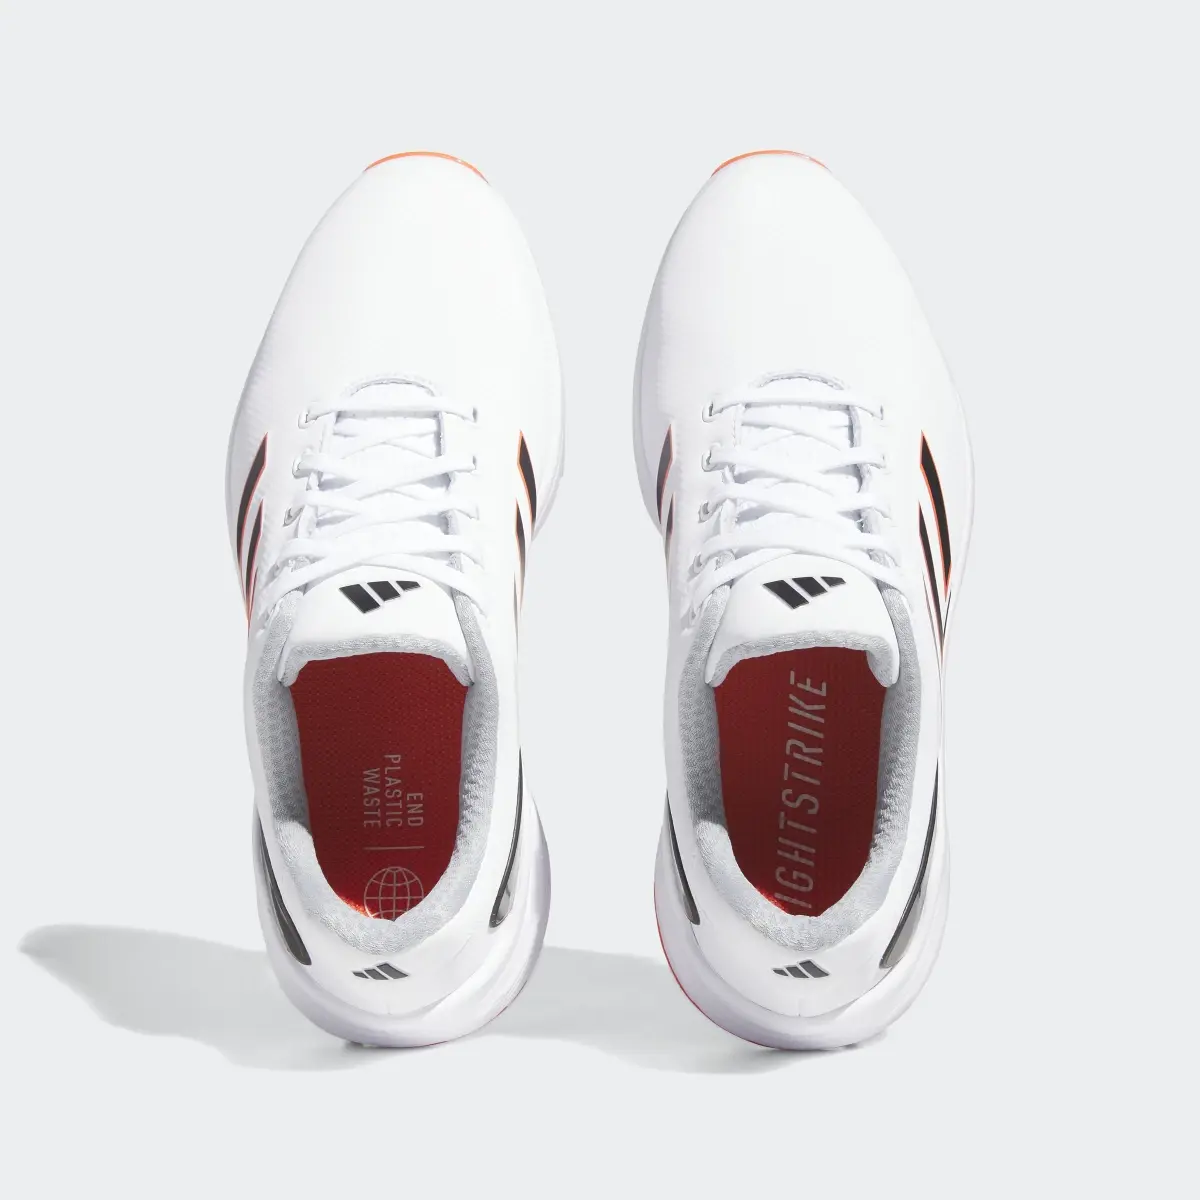 Adidas ZG23 Golf Shoes. 3